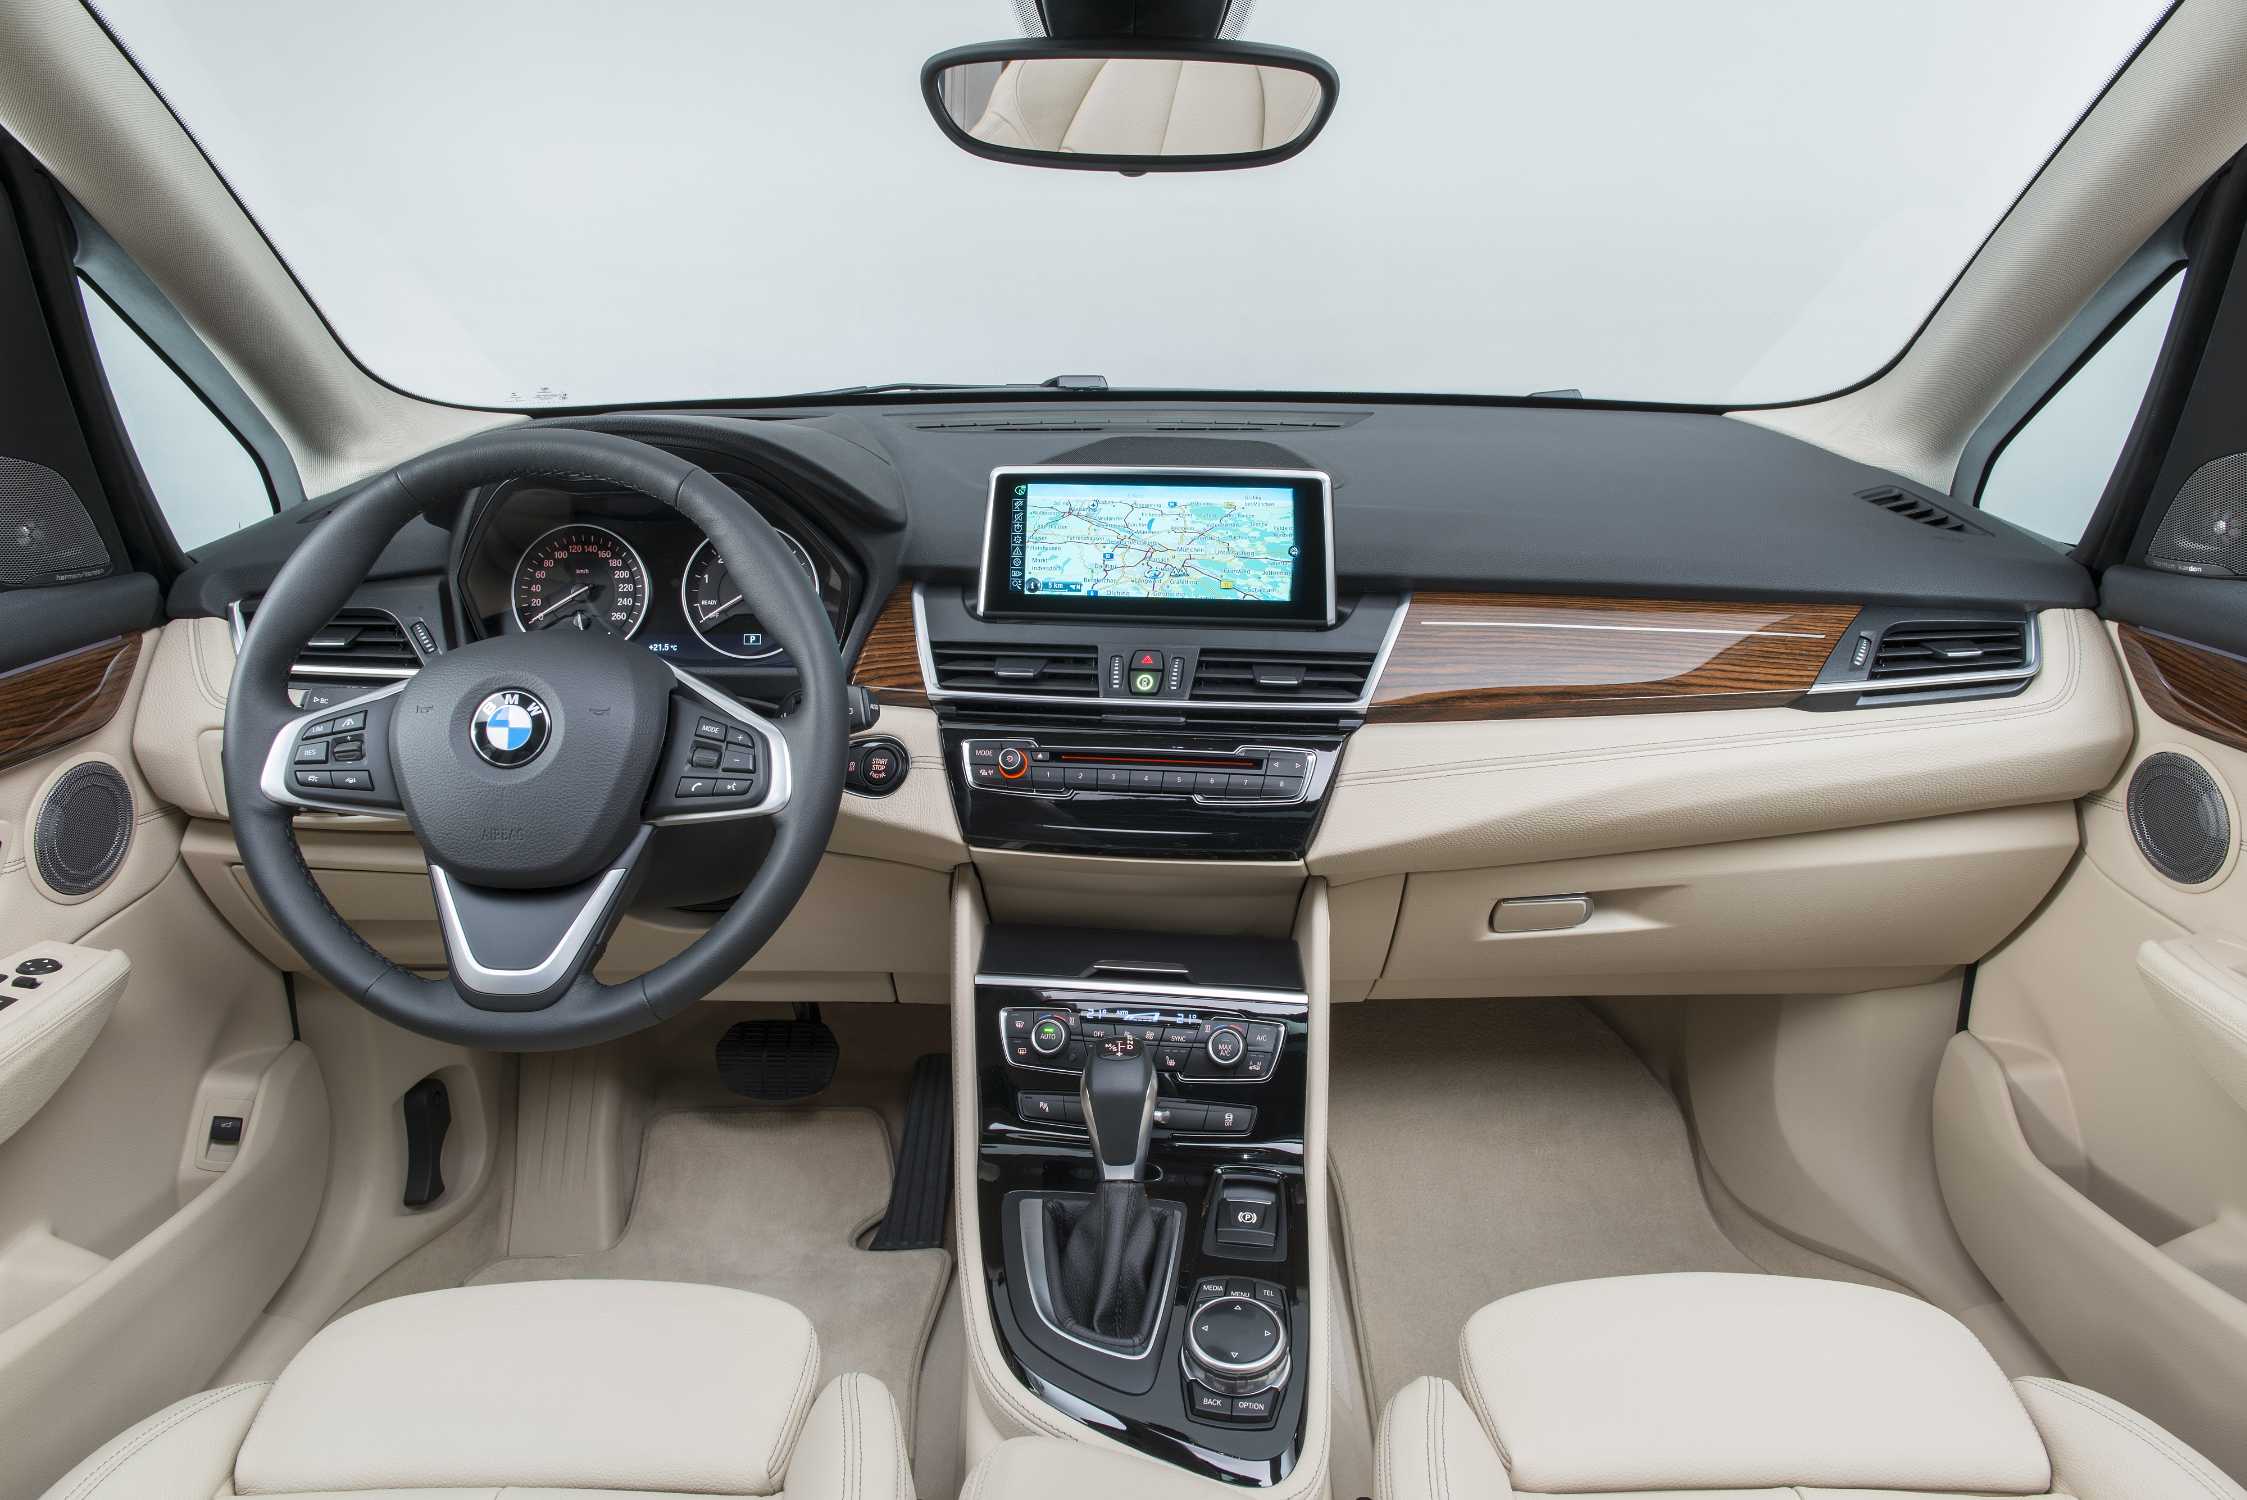 Også kabinedesignet følger BMWs velkendte mønster. Standardudstyret bliver dog noget mere beskedent end på billedet.